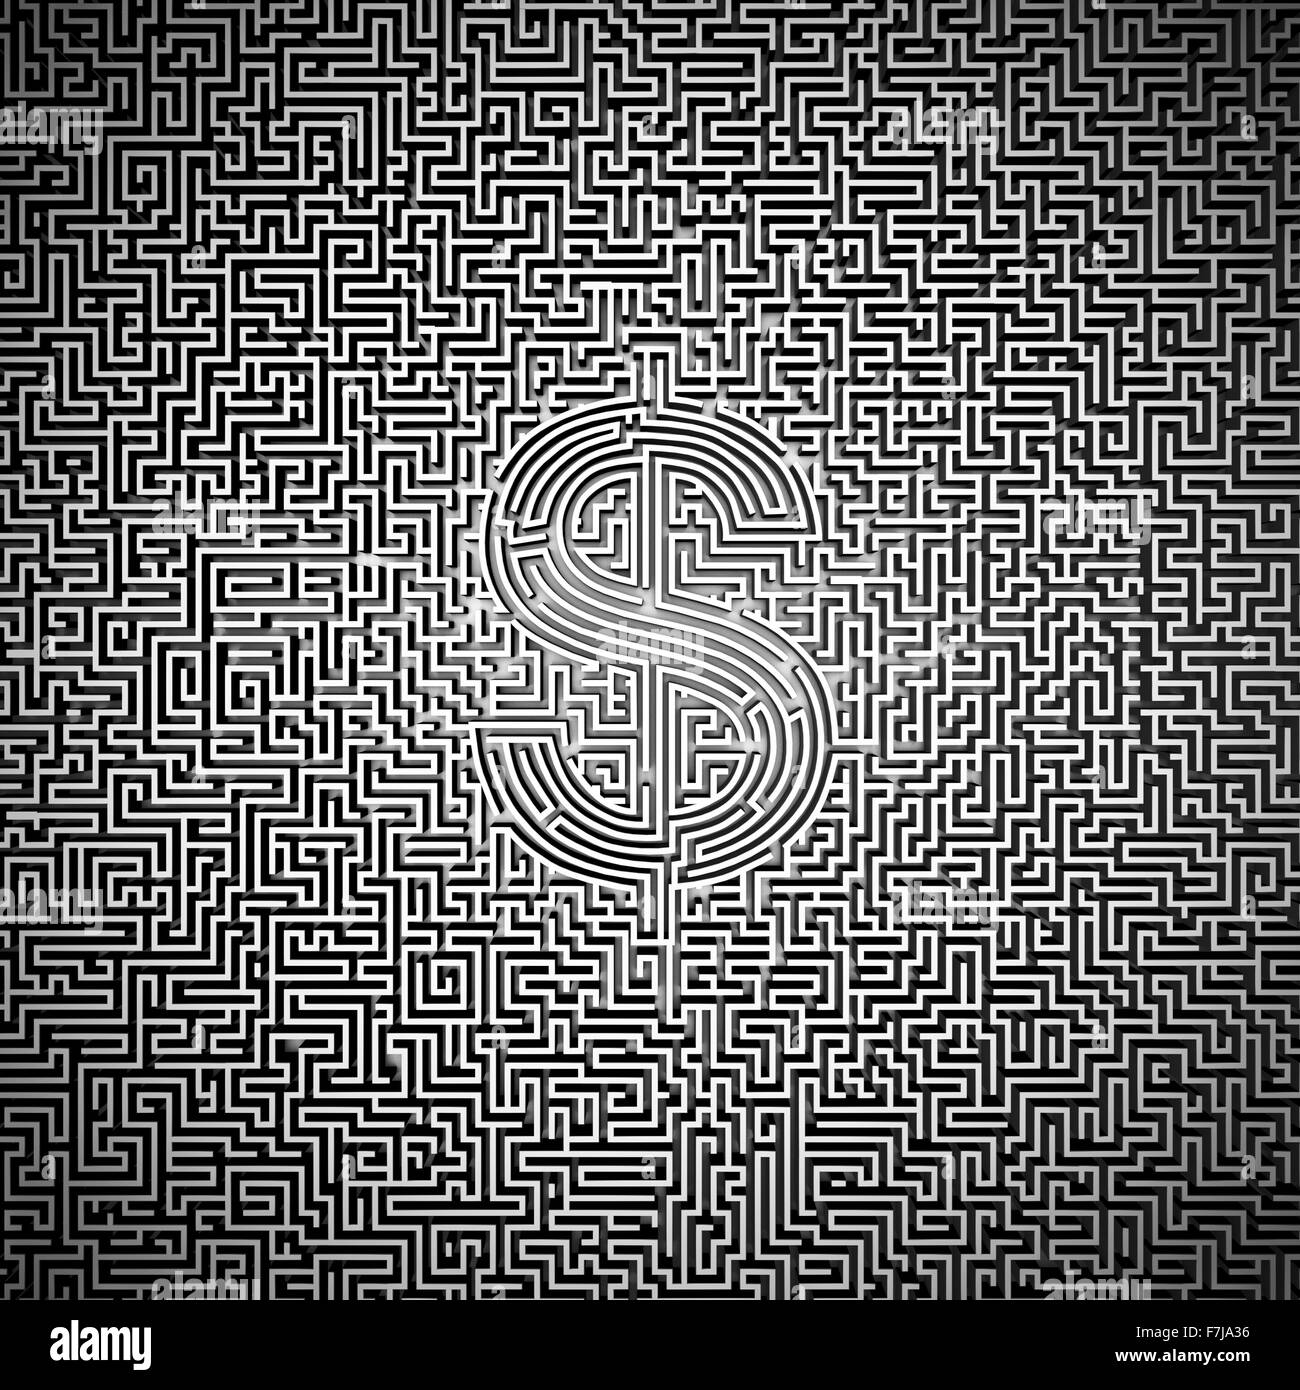 Dollar ultime / labyrinthe 3D render of labyrinthe géant avec le symbole du dollar dans le centre Banque D'Images